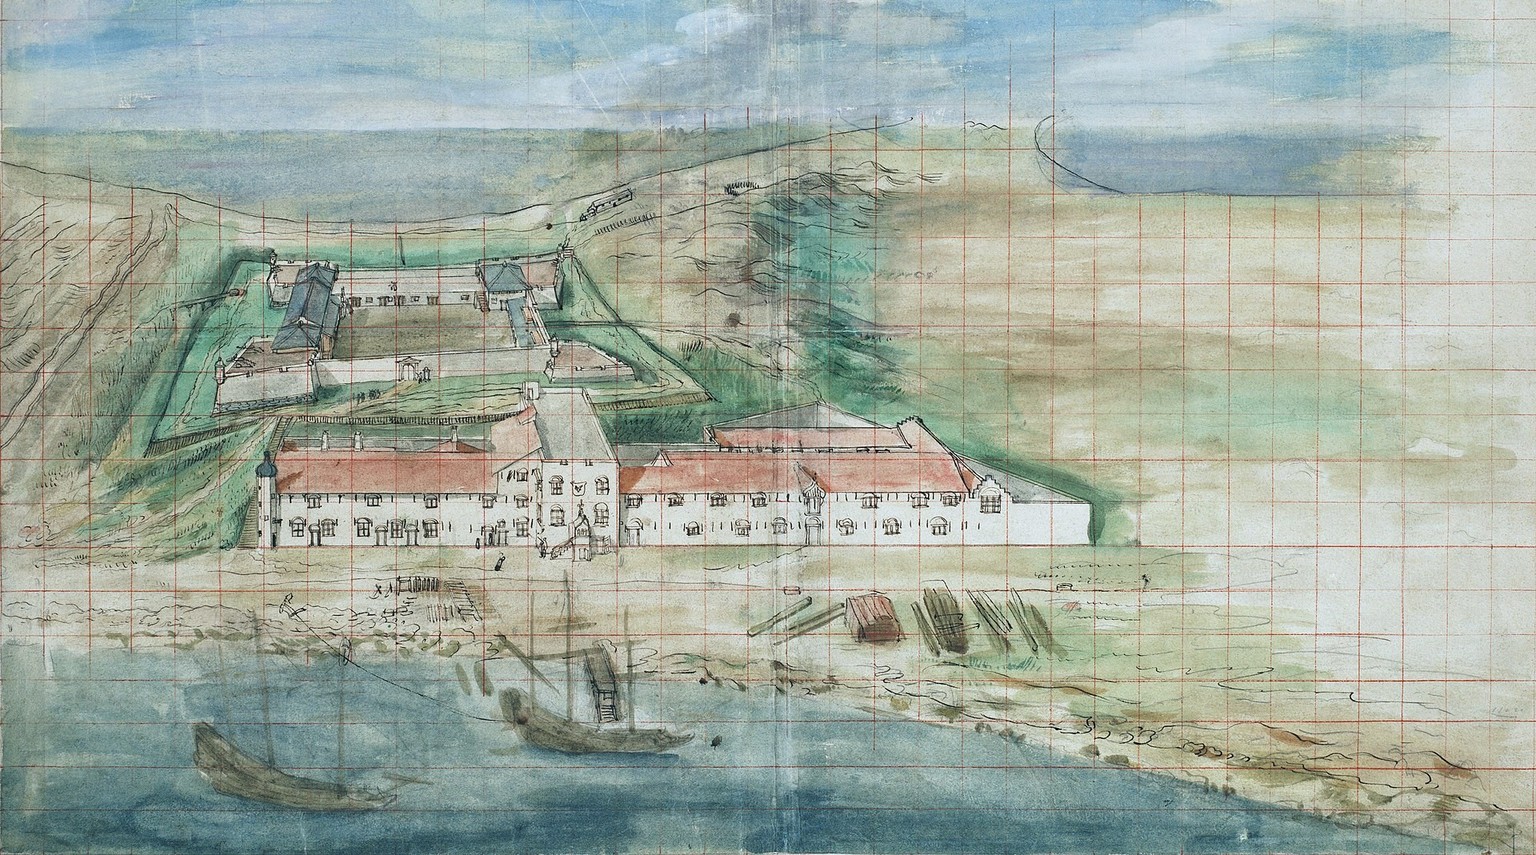 Fort Zeelandia, die wichtigste niederländische Festung auf Taiwan, um ca. 1635.